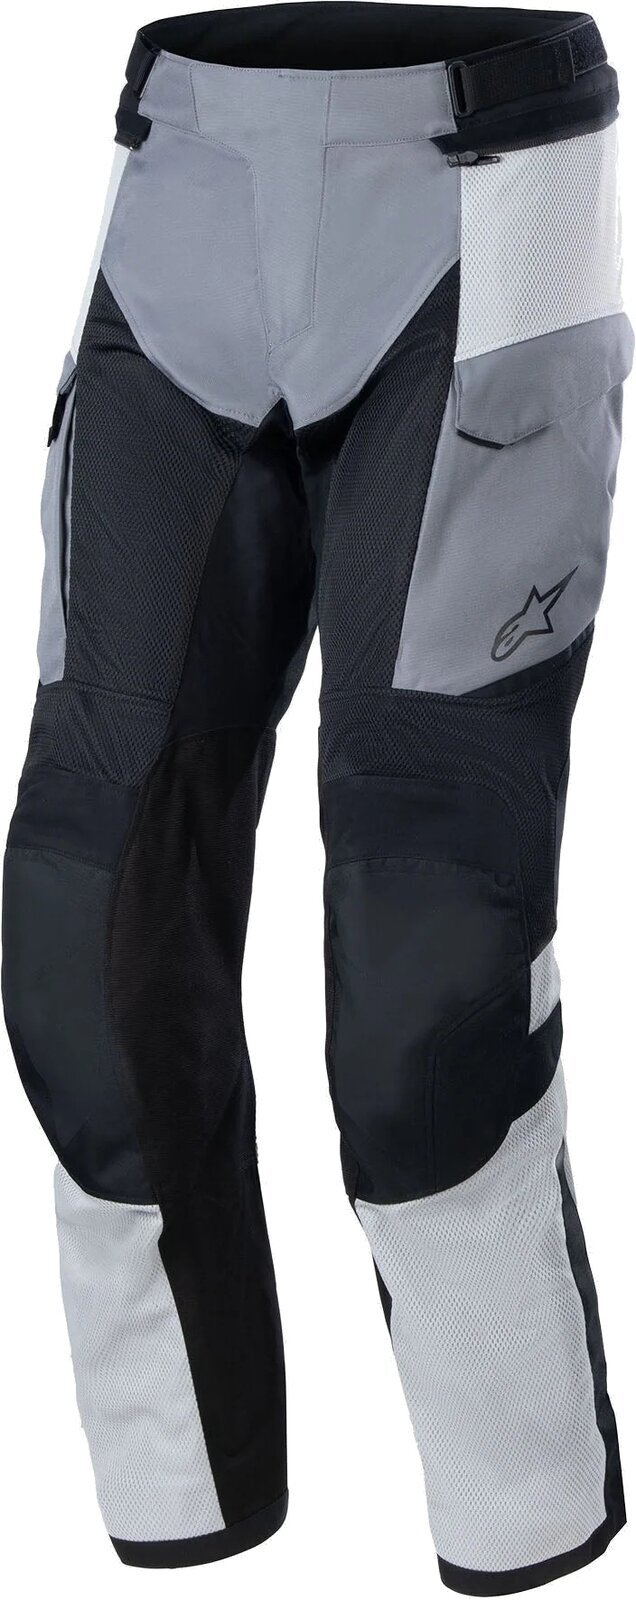 Textilní kalhoty Alpinestars Andes Air Drystar Pants Ice Gray/Dark Gray/Black 3XL Textilní kalhoty